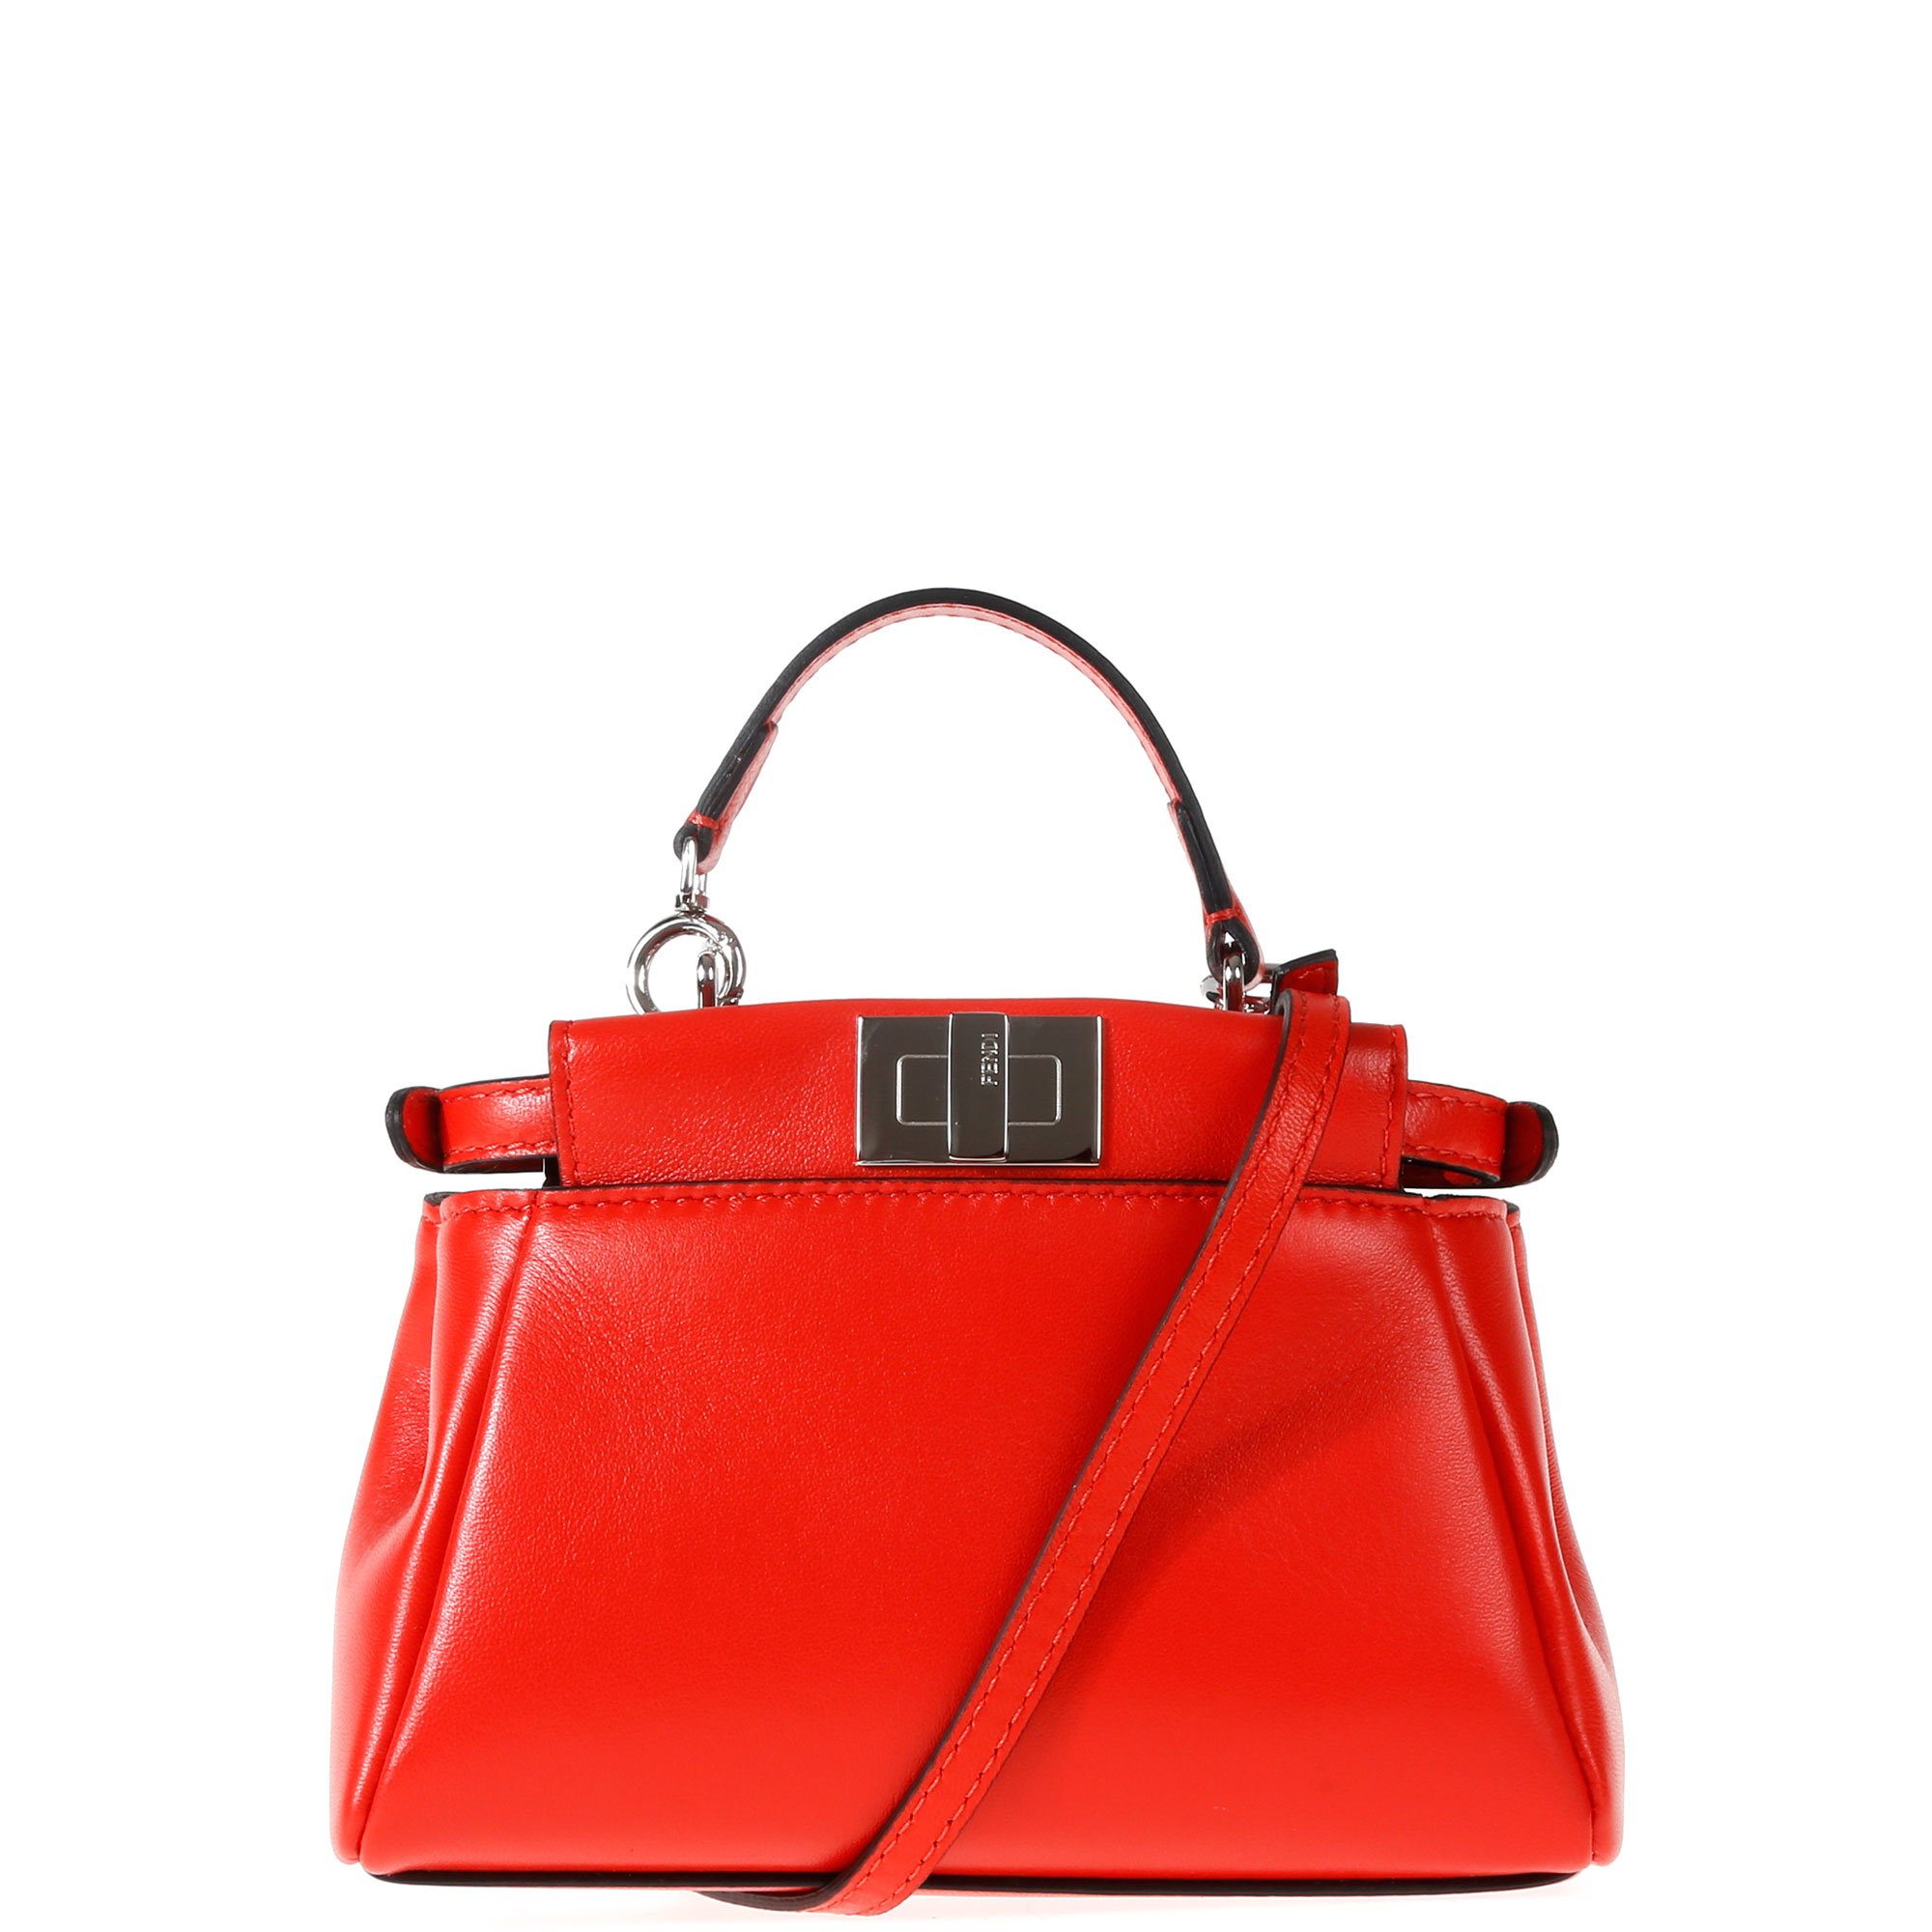 Fendi Leather Micro Peekaboo Bag in Red - Lyst